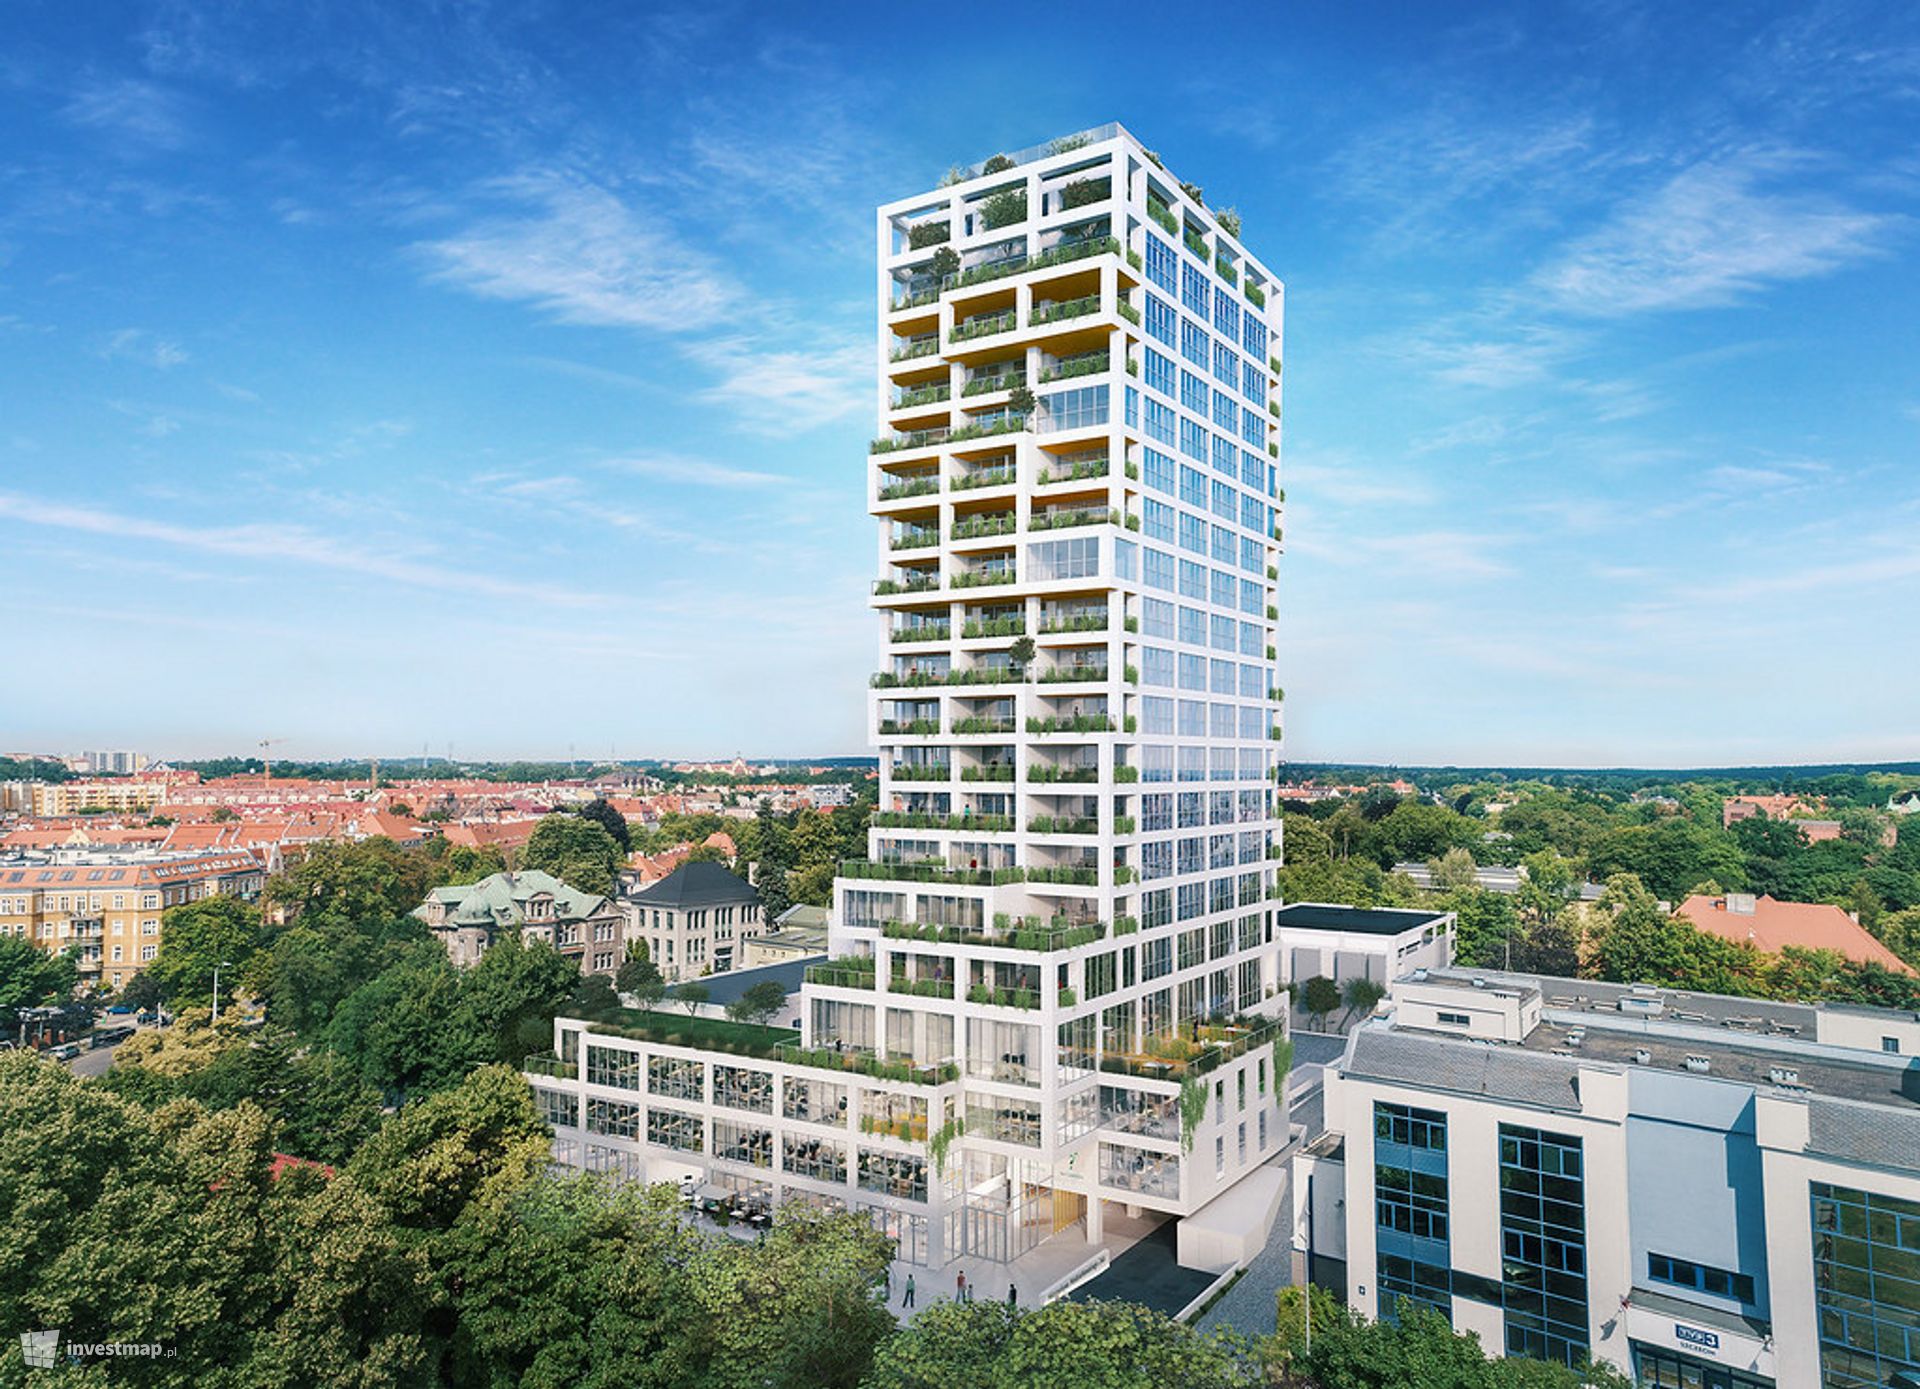 W Szczecinie powstaje 72-metrowy wieżowiec Sky Garden. Powstaną w nim apartamenty i biura 